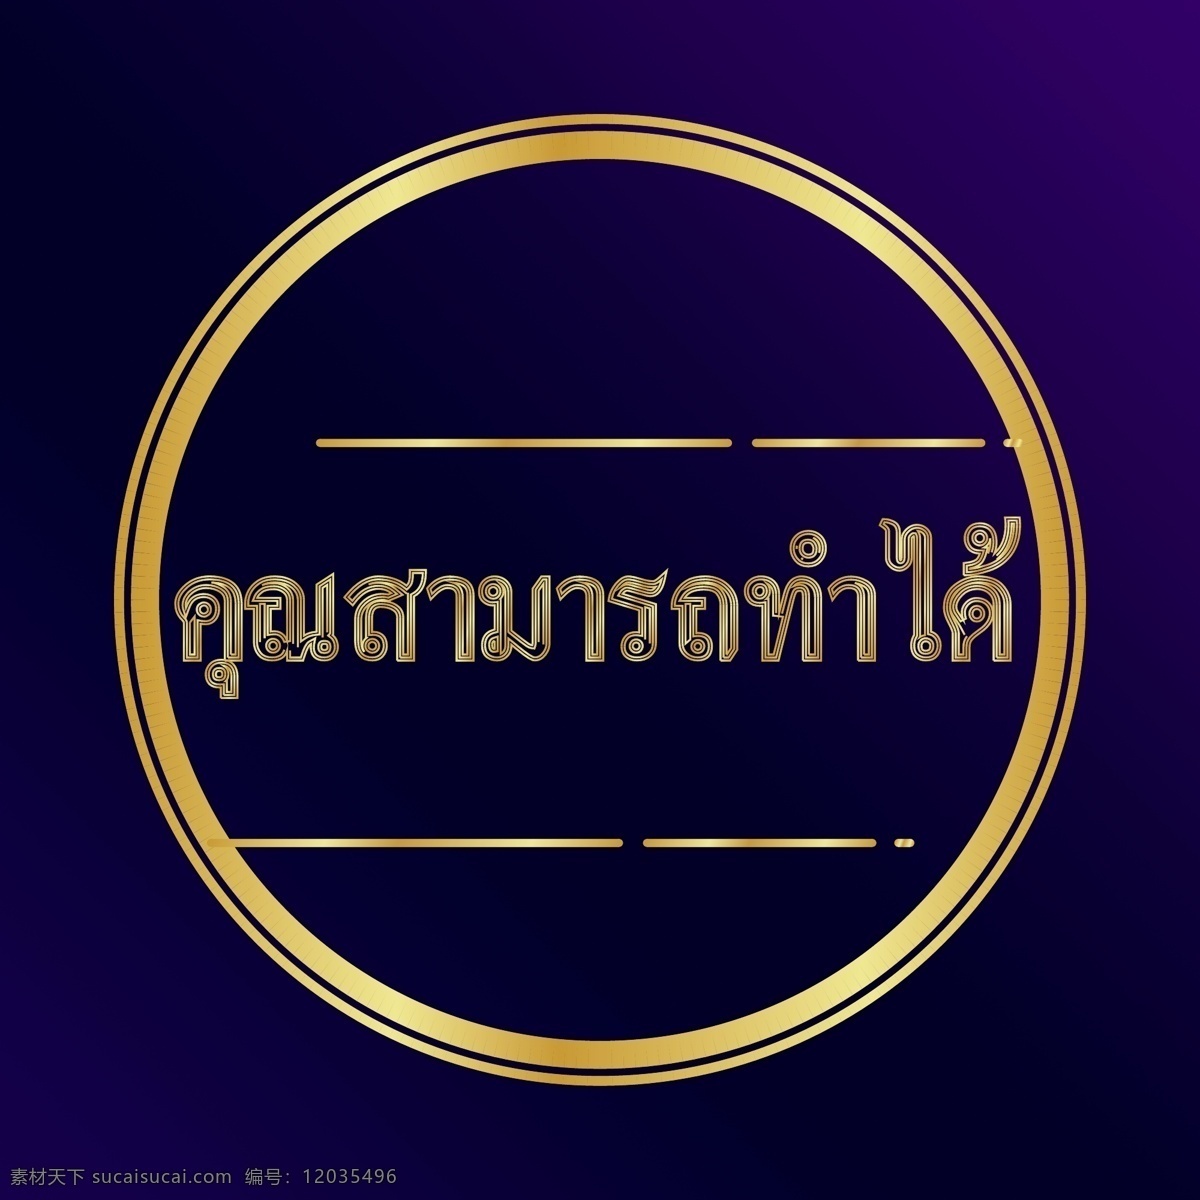 泰国 金 圈 可以 文字 字体 地板 紫色